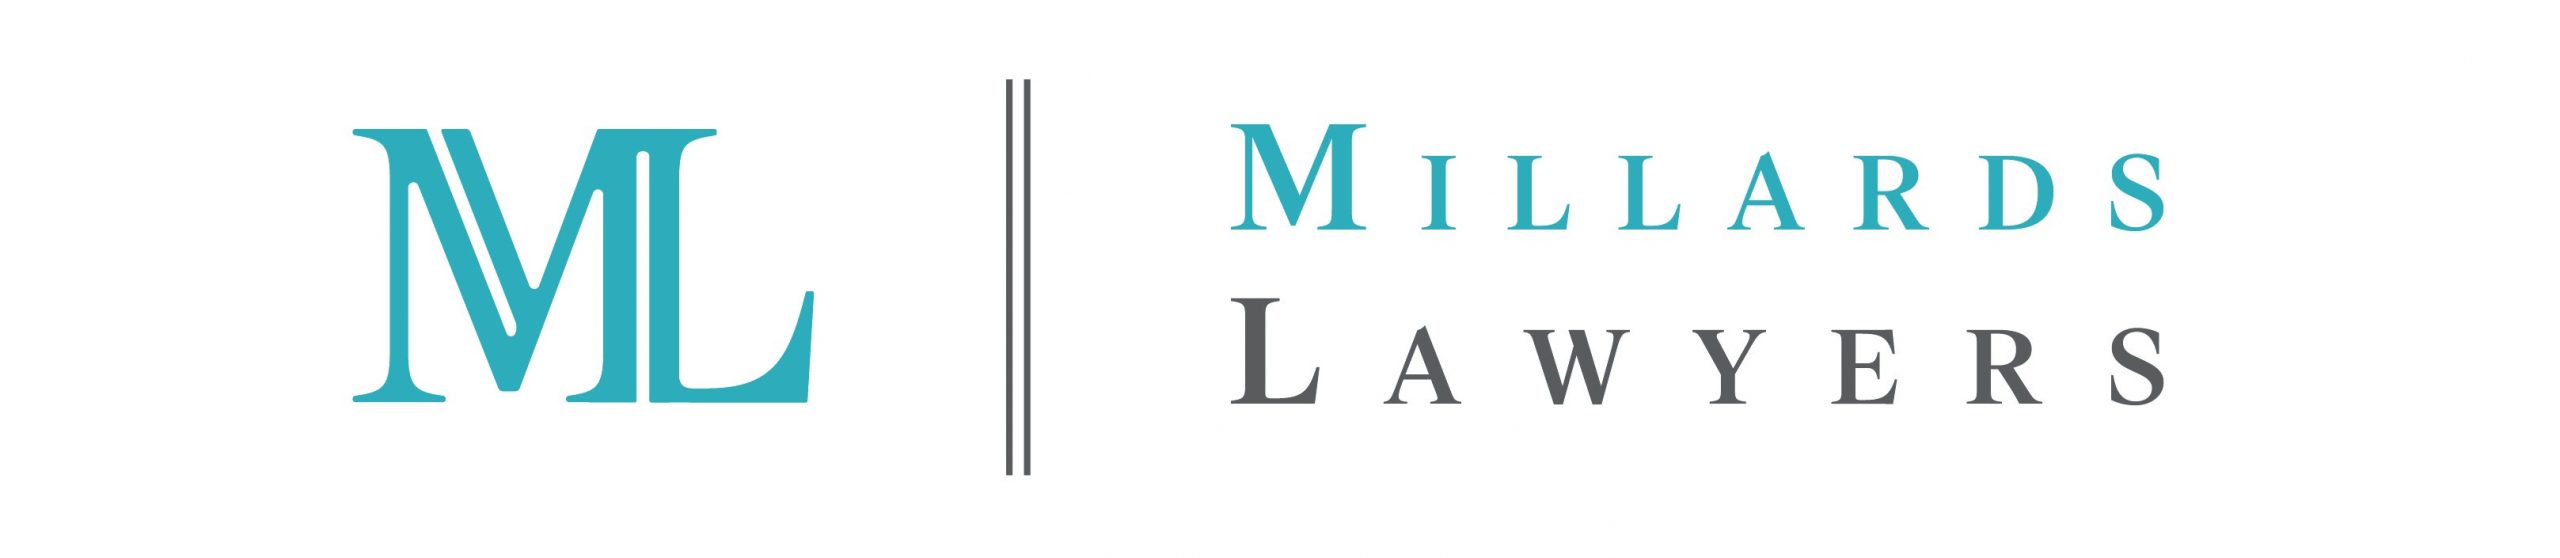 Millards Lawyers